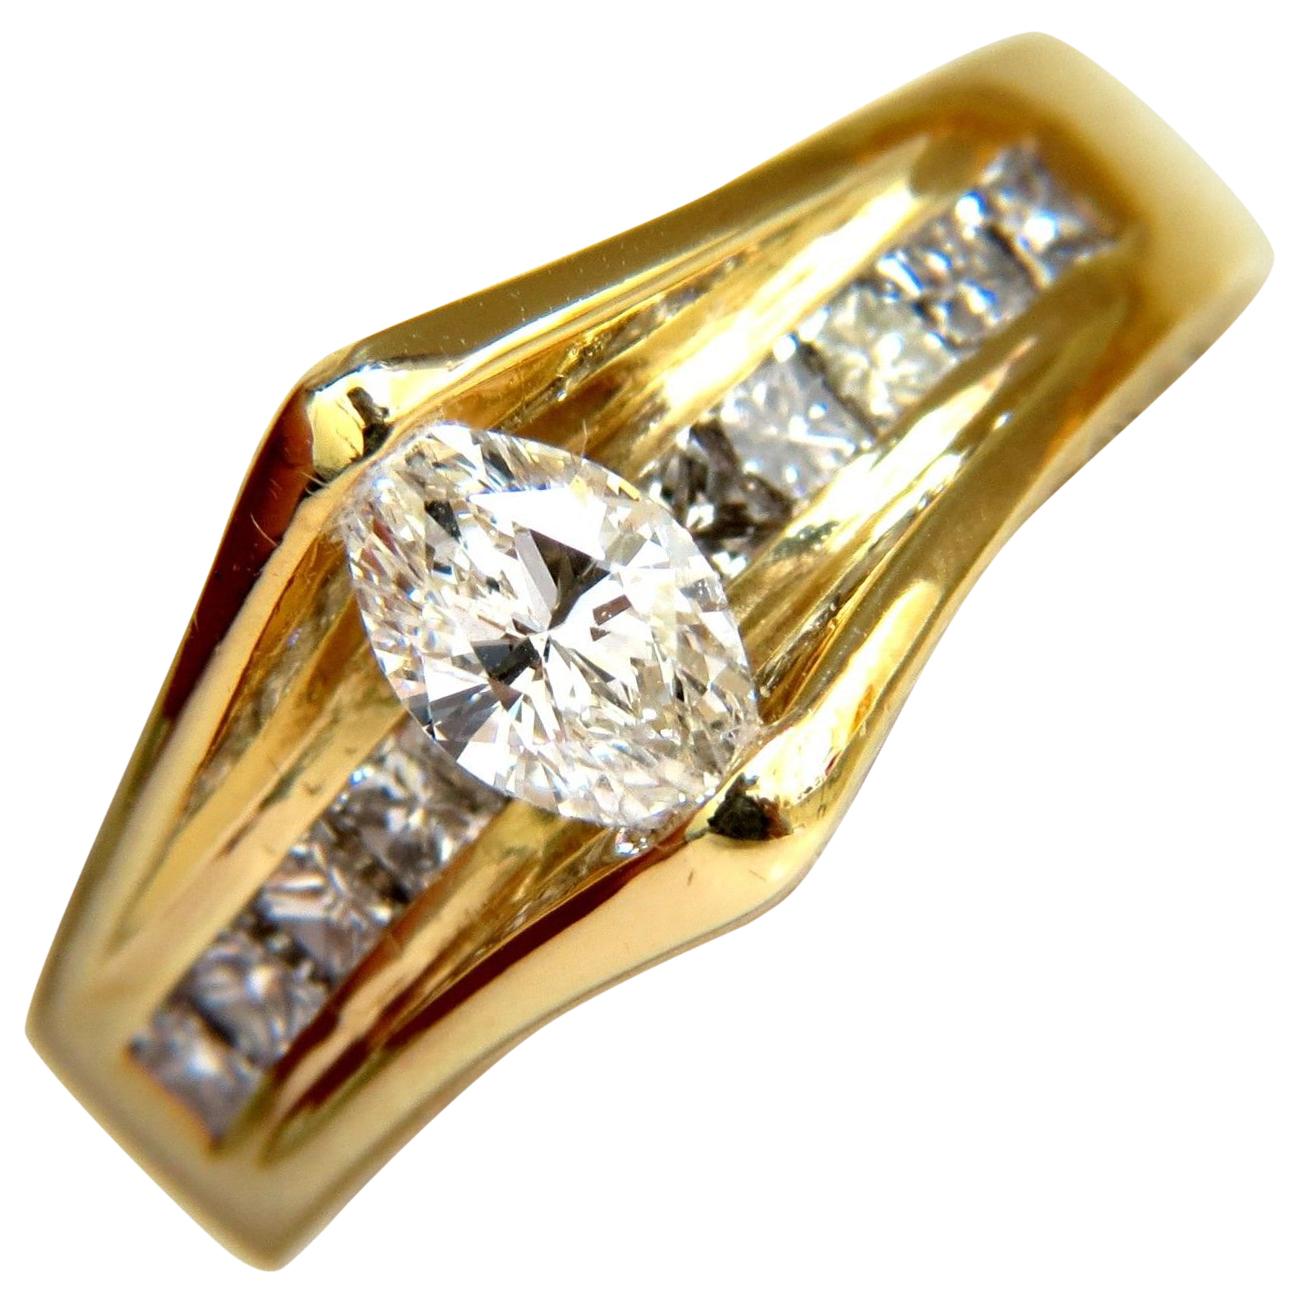 1.12 Carat 18 Karat 1.12 Carat Diamonds Tension Top Class Mod Deco Handmade Ring